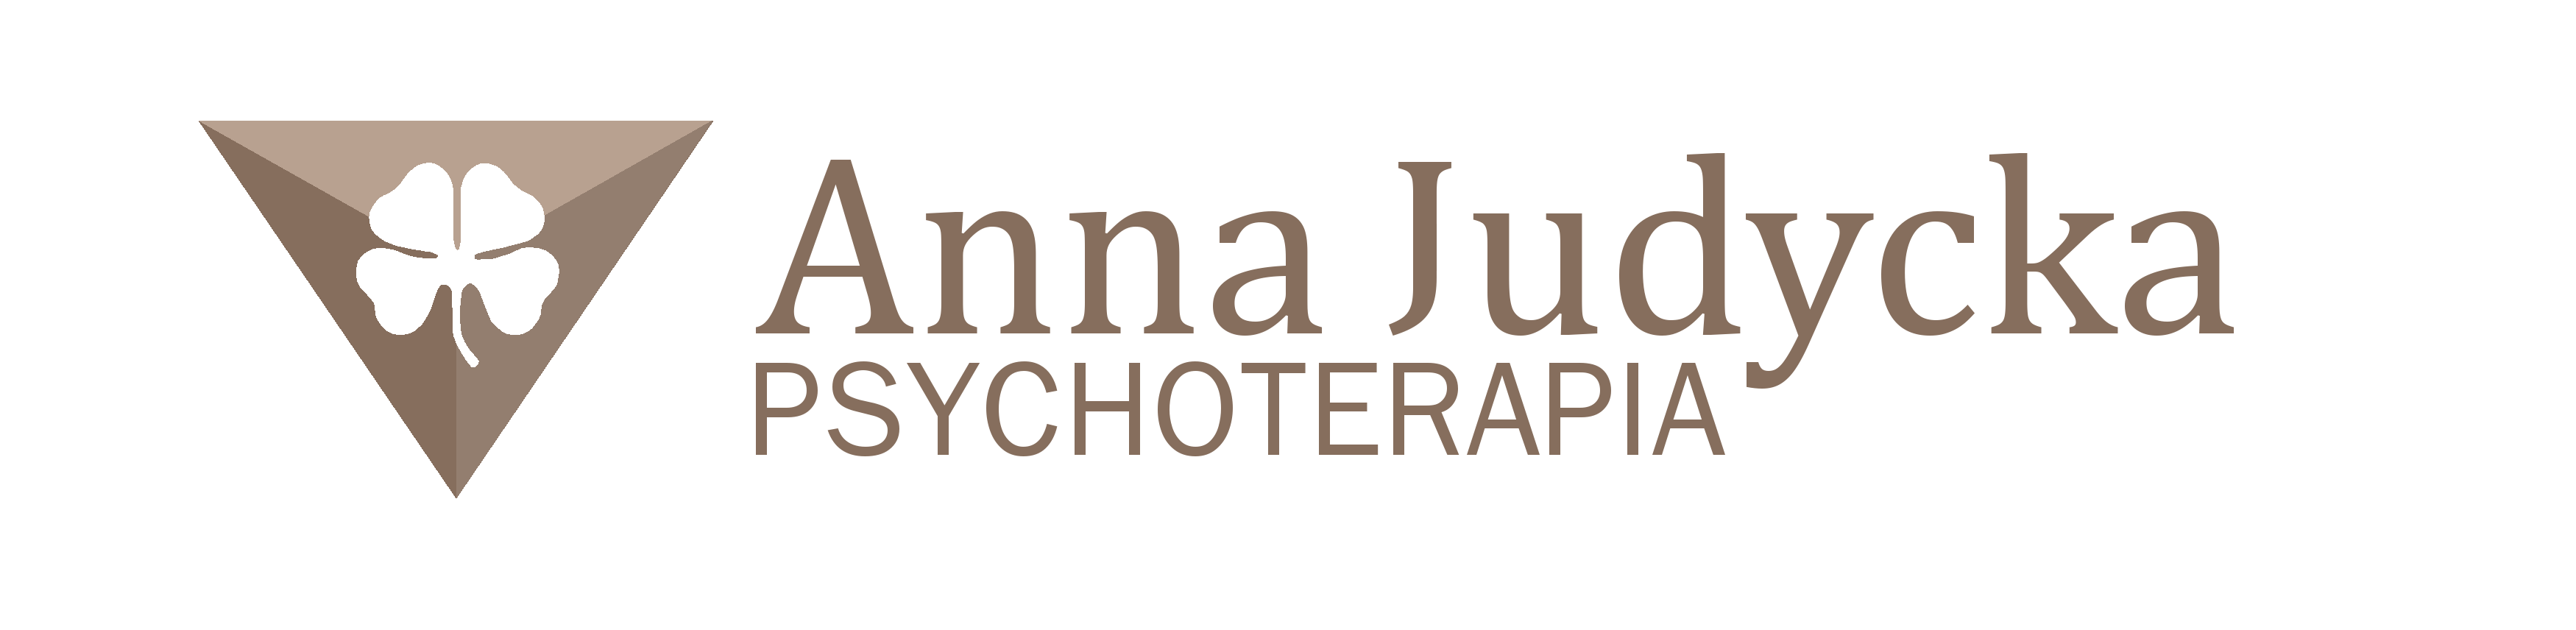 Anna Judycka Psychoterapia